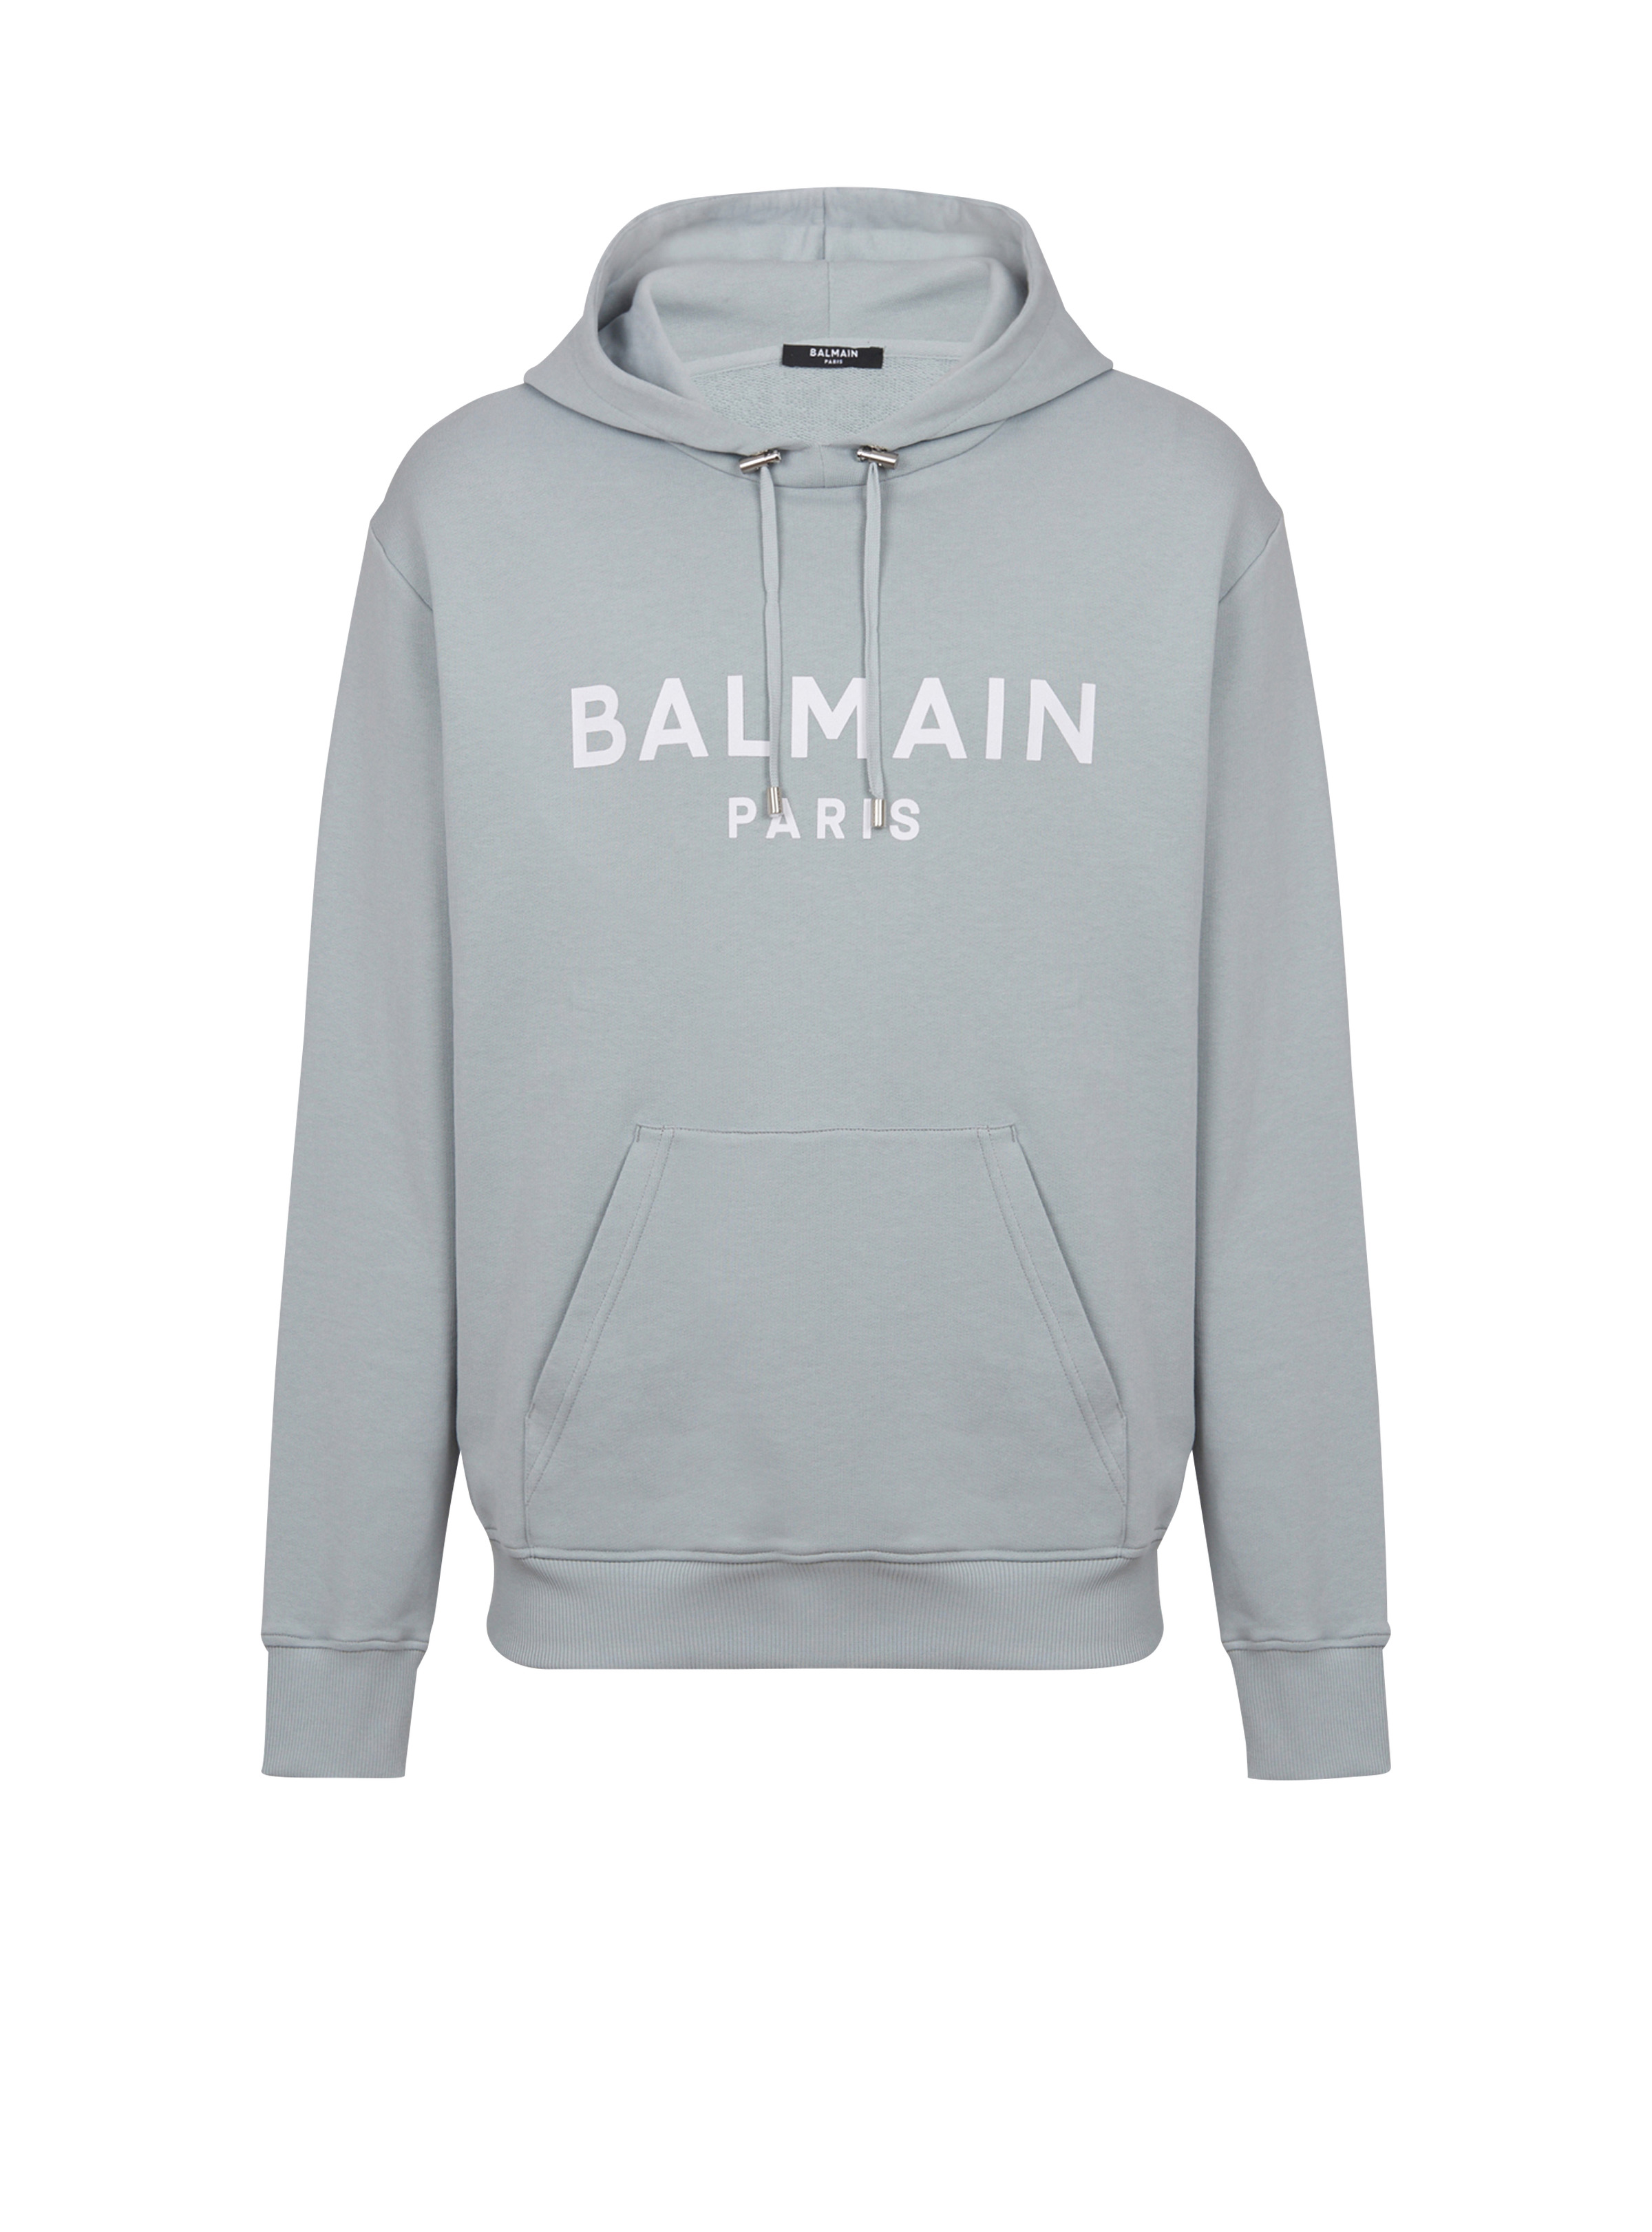 Printed Balmain Paris hoodie - 1